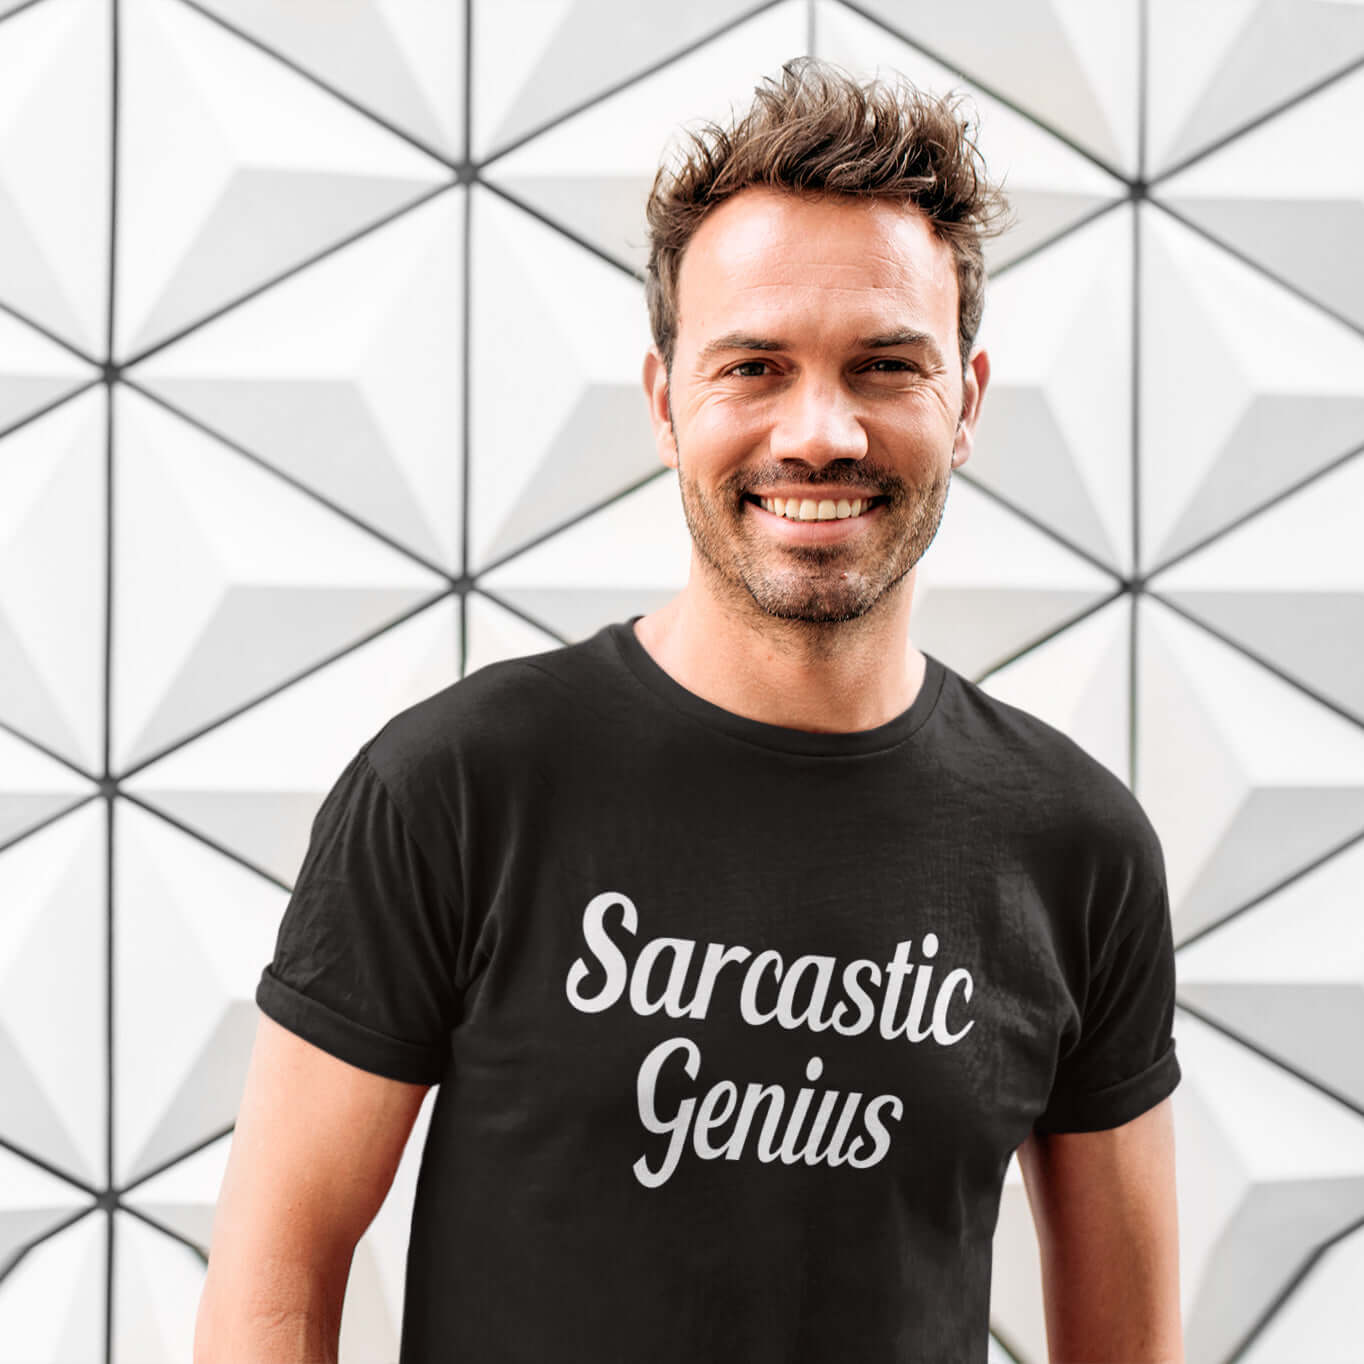 Sarcastic genius T-Shirt